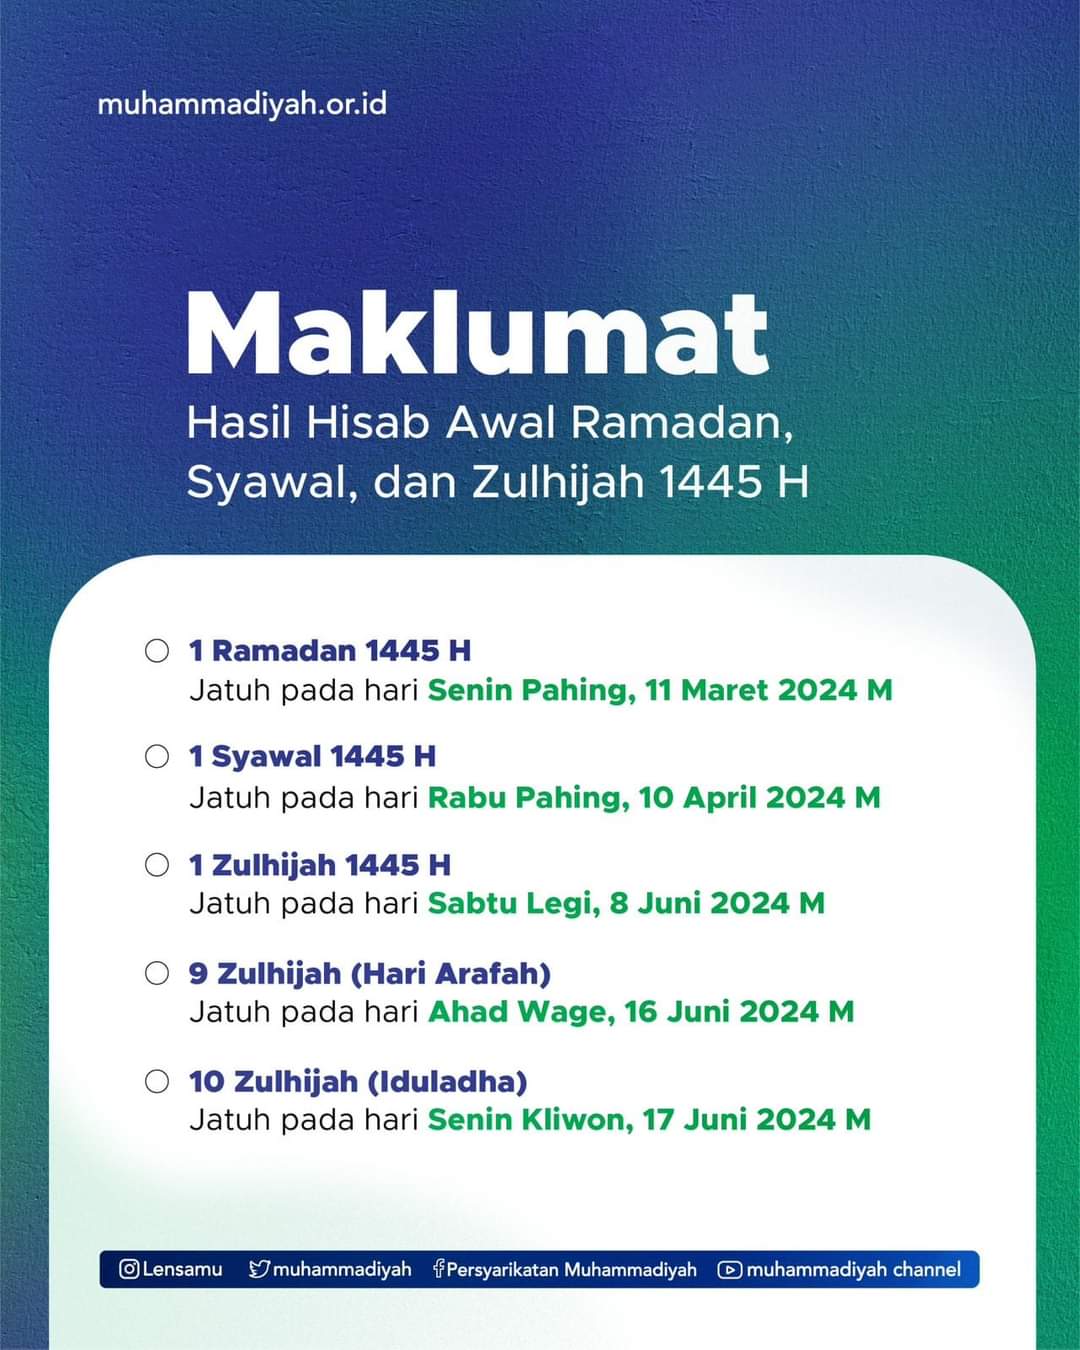 Maklumat-Hasil-Hisab-Awal-Ramadhan-PP-Muhammadiyah.jpg